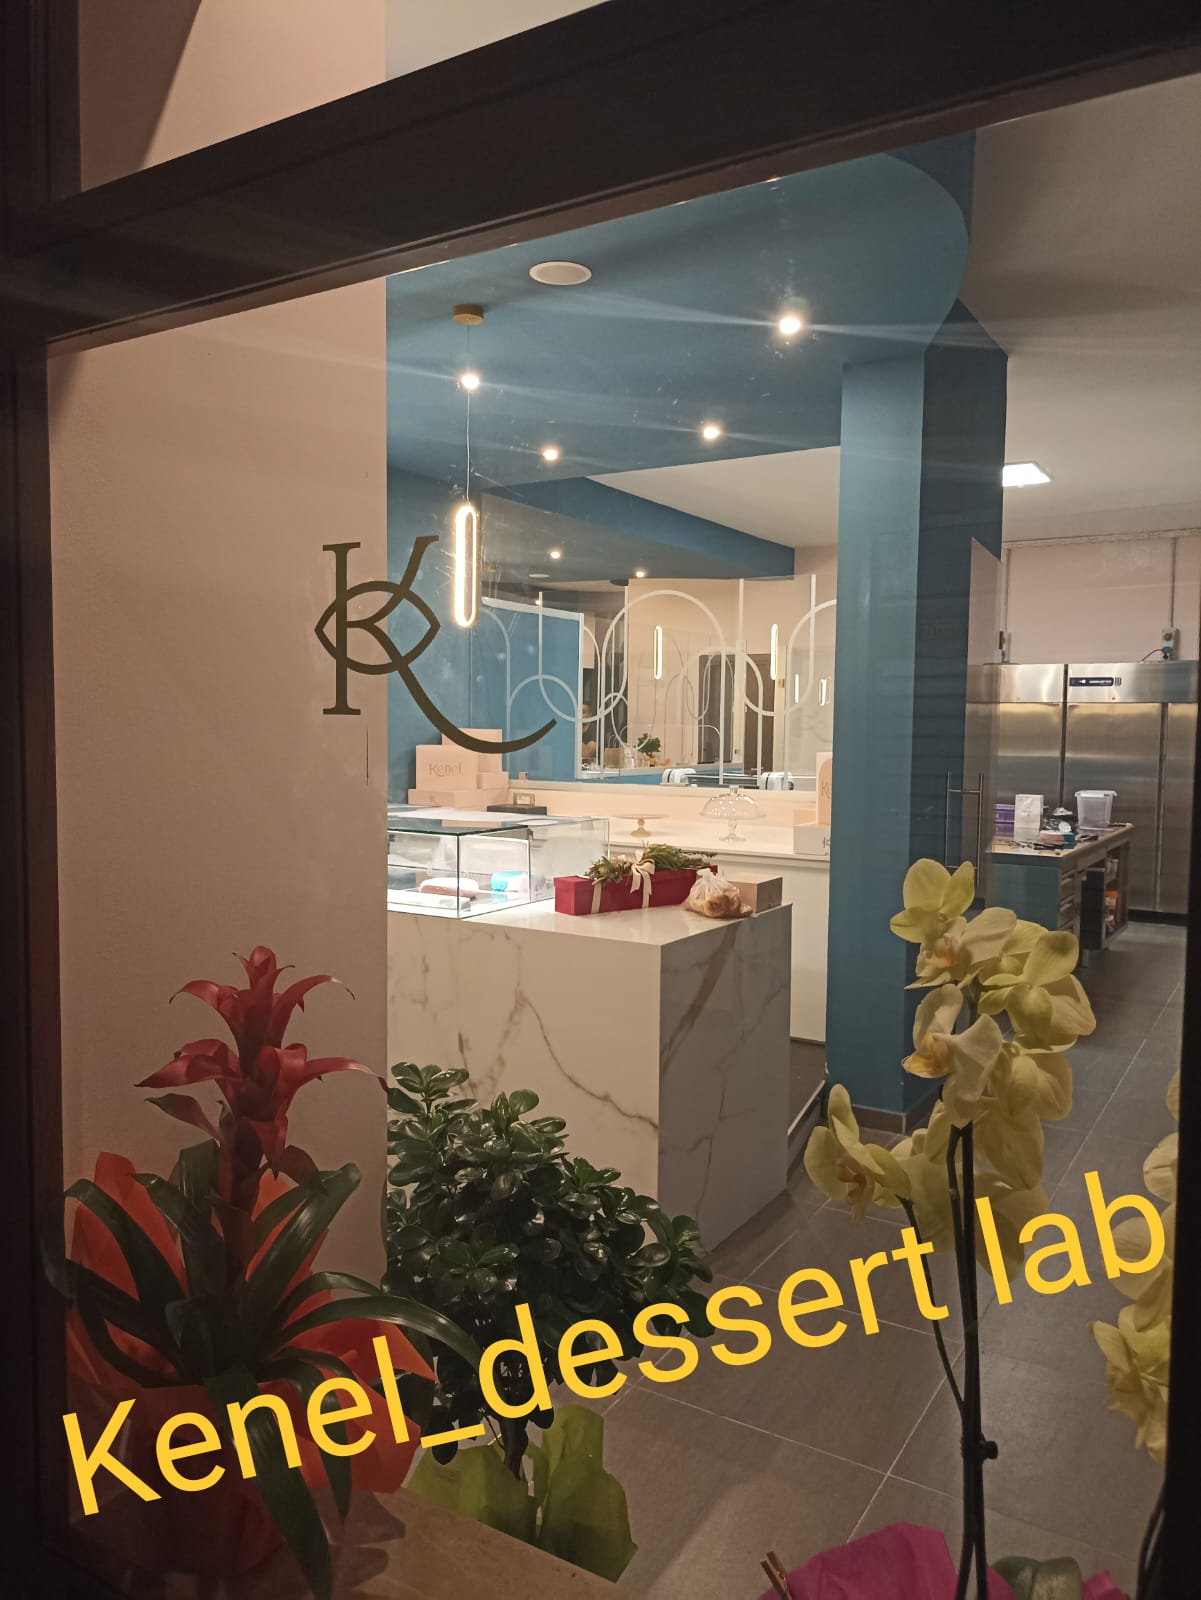 AVELLINO. Kenel dessert lab, apre in città un nuovo laboratorio di bar e pasticceria moderna